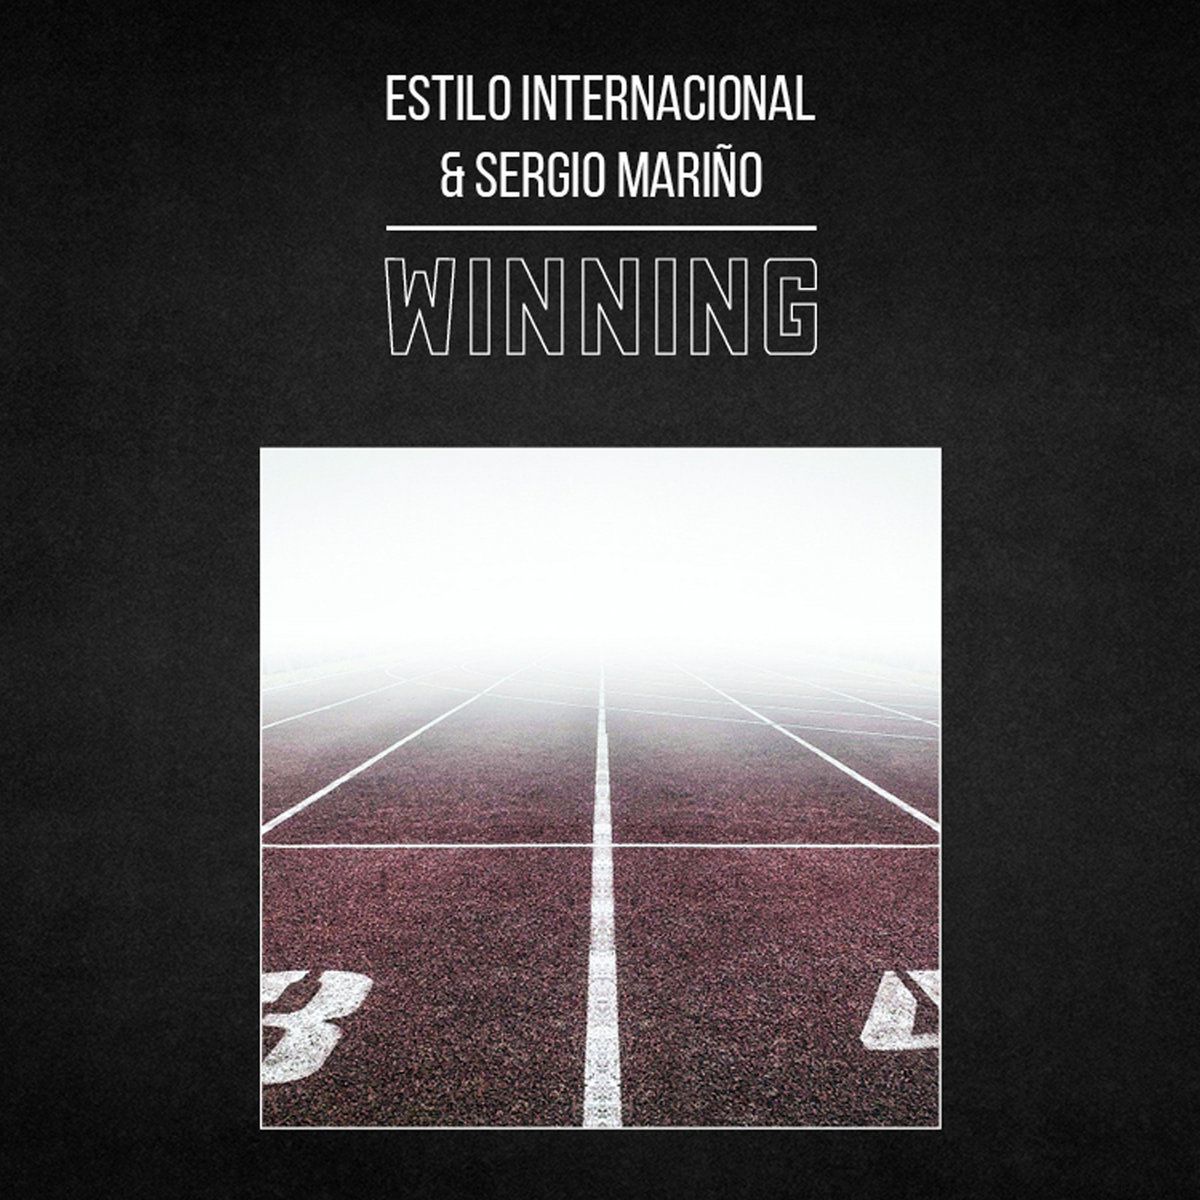 Estilo Internacional & Sergio Mariño homenajean a "The Sound" versionando Winning